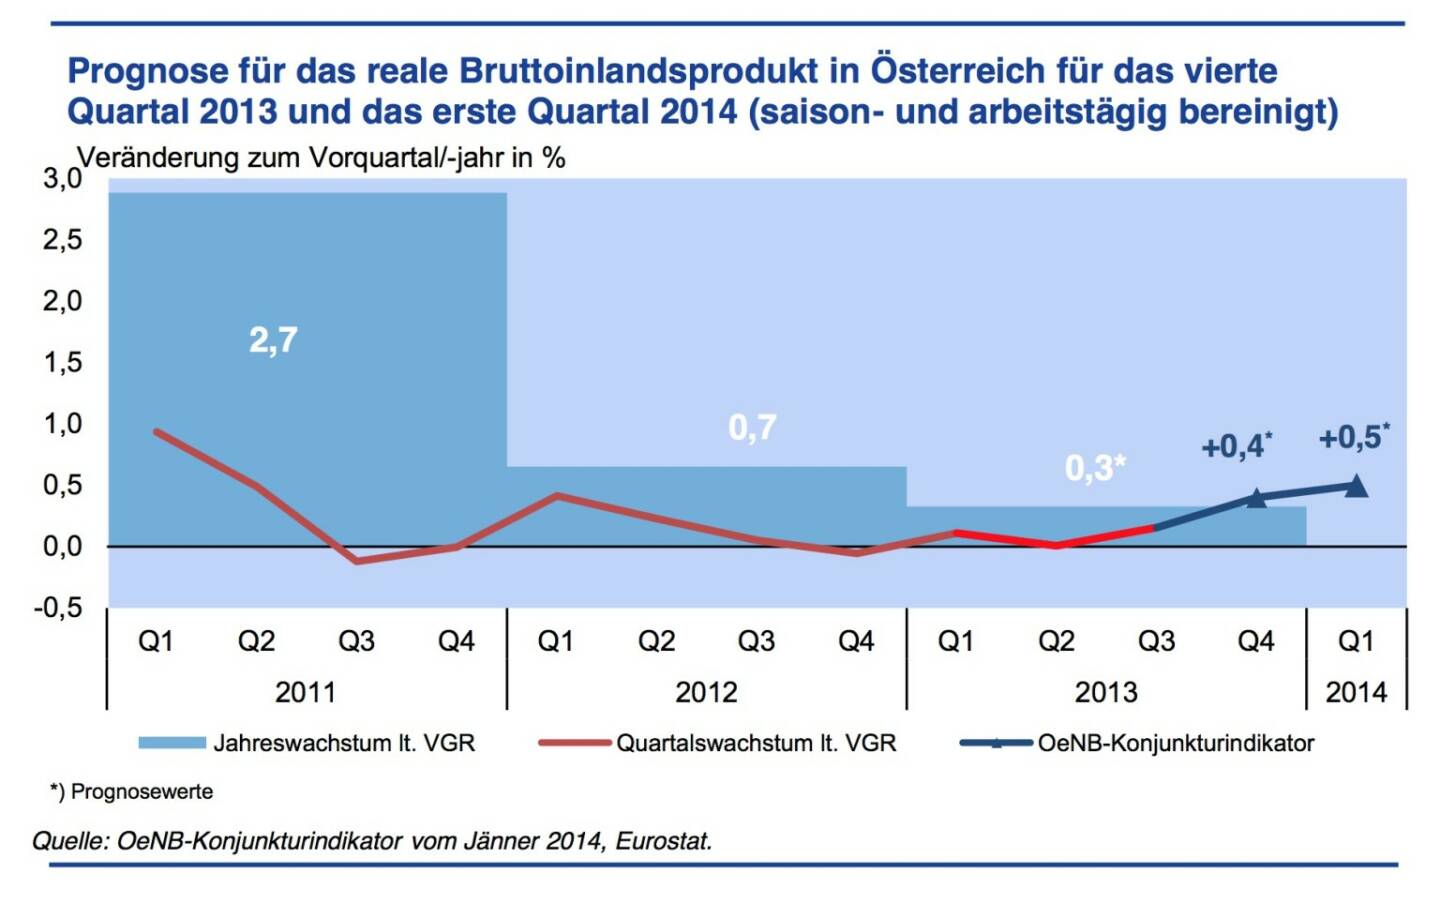 Konjunkturdynamik festigt sich zum Jahreswechsel - Gemäß den Ergebnissen des OeNB-Konjunkturindikators wird das Wachstum der österreichischen Wirtschaft im vierten Quartal 2013 +0,4 % gegenüber dem Vorquartal betragen. Für das erste Quartal 2014 wird mit einem Wachstum von +0,5 % gerechnet. Diese Dynamik steht im Einklang mit der OeNB-Prognose vom Dezember 2013. Das Jahr 2013 stellt mit einem Wachstum von +0,3 % den Tiefpunkt im aktuellen Konjunkturzyklus dar. Die Entwicklung im Jahr 2014 wird deutlich stärker sein. (Grafik: OeNB)